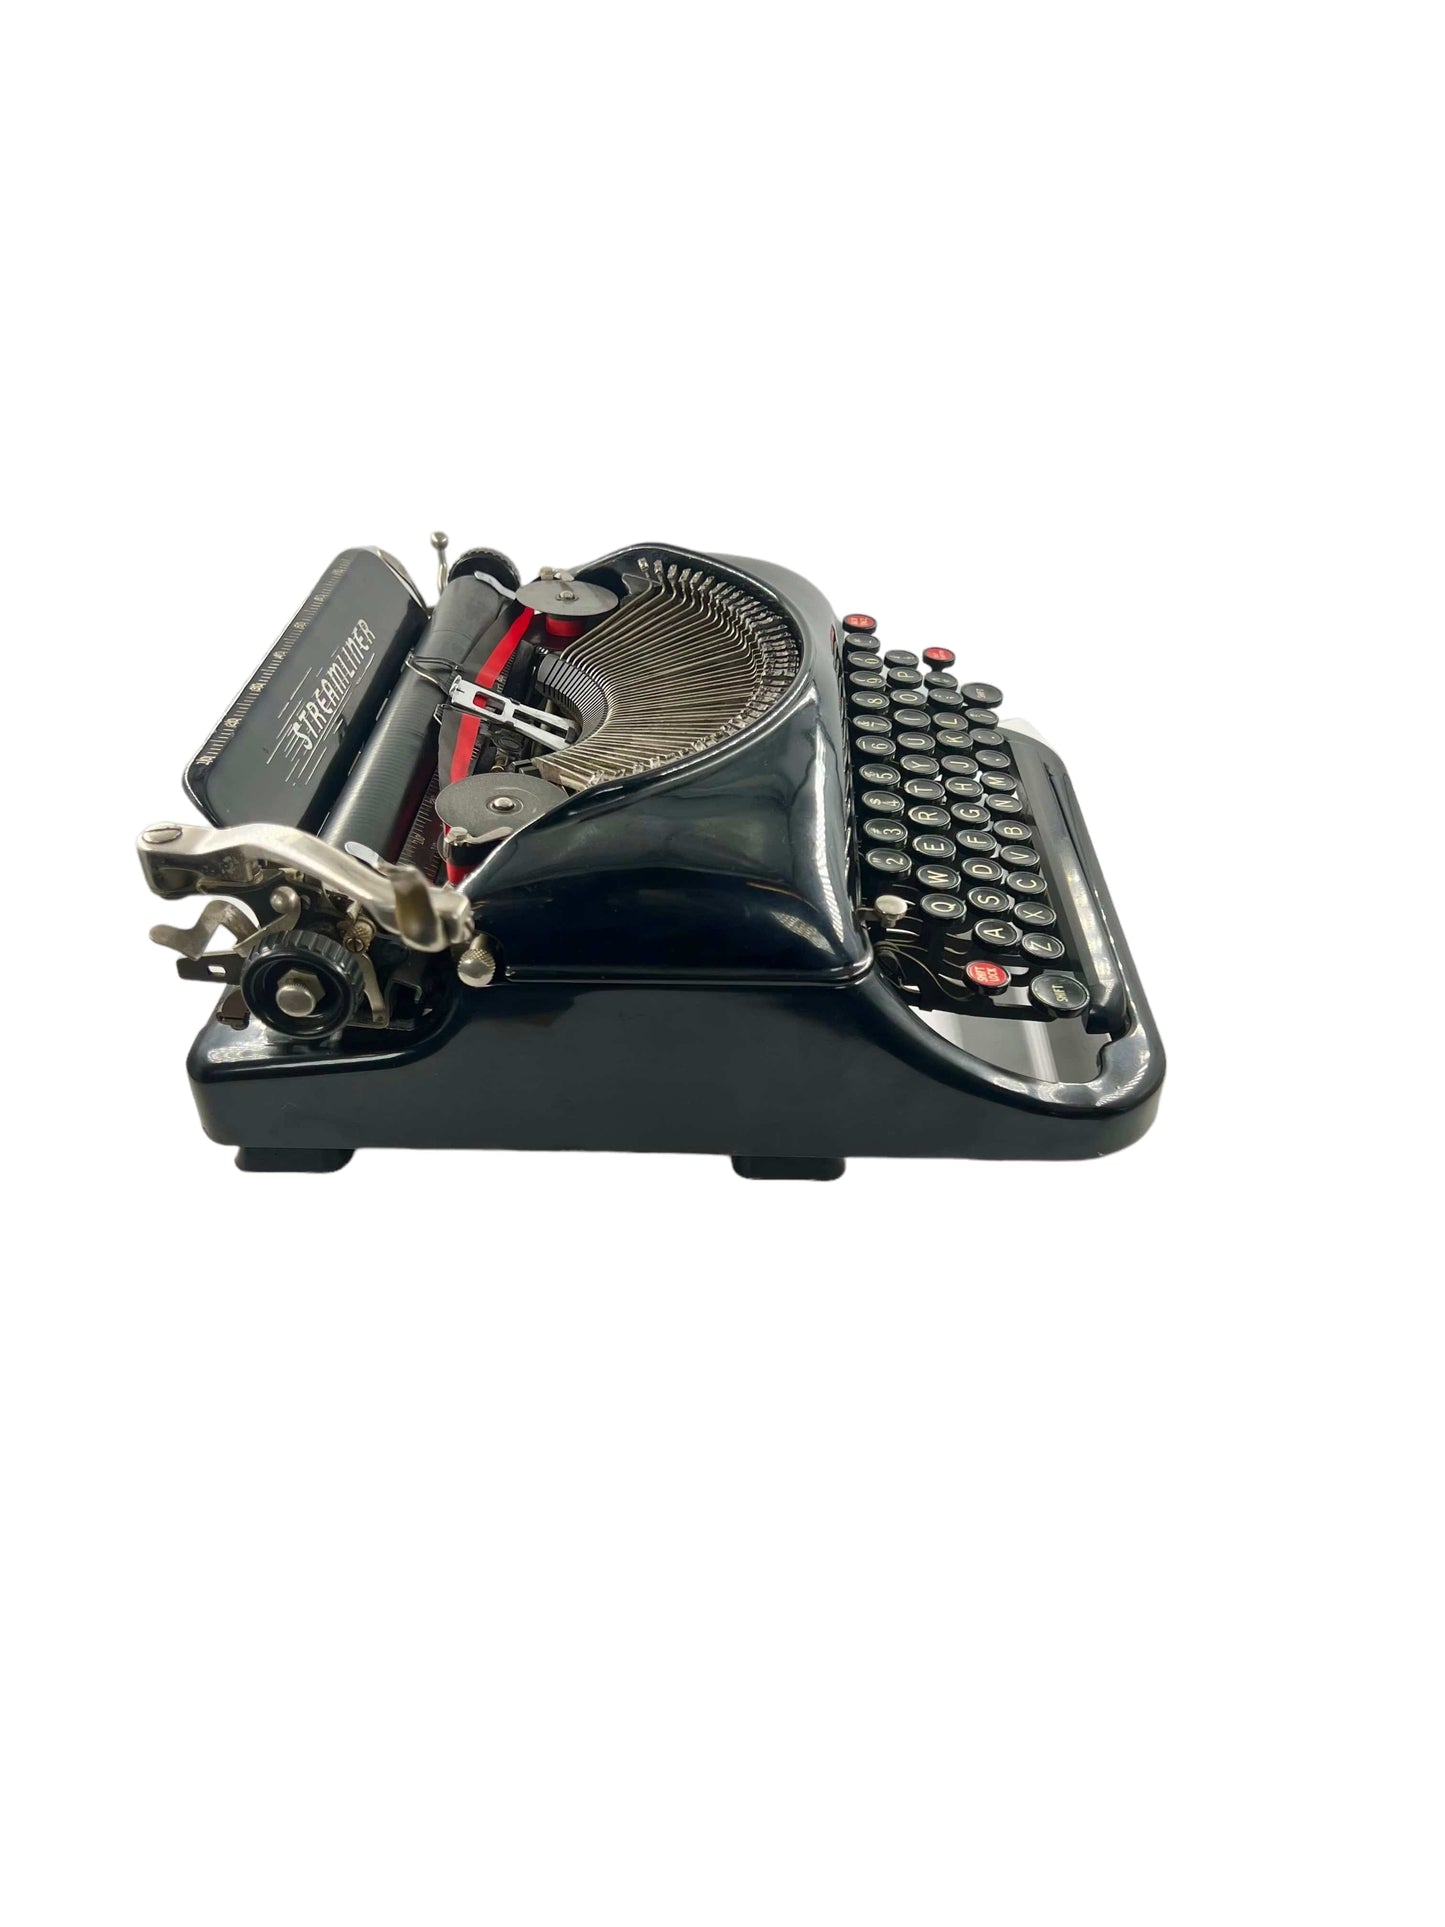 Toronto Typewriters Portable Typewriter Remington Streamliner (Gust of Wind) Typewriter